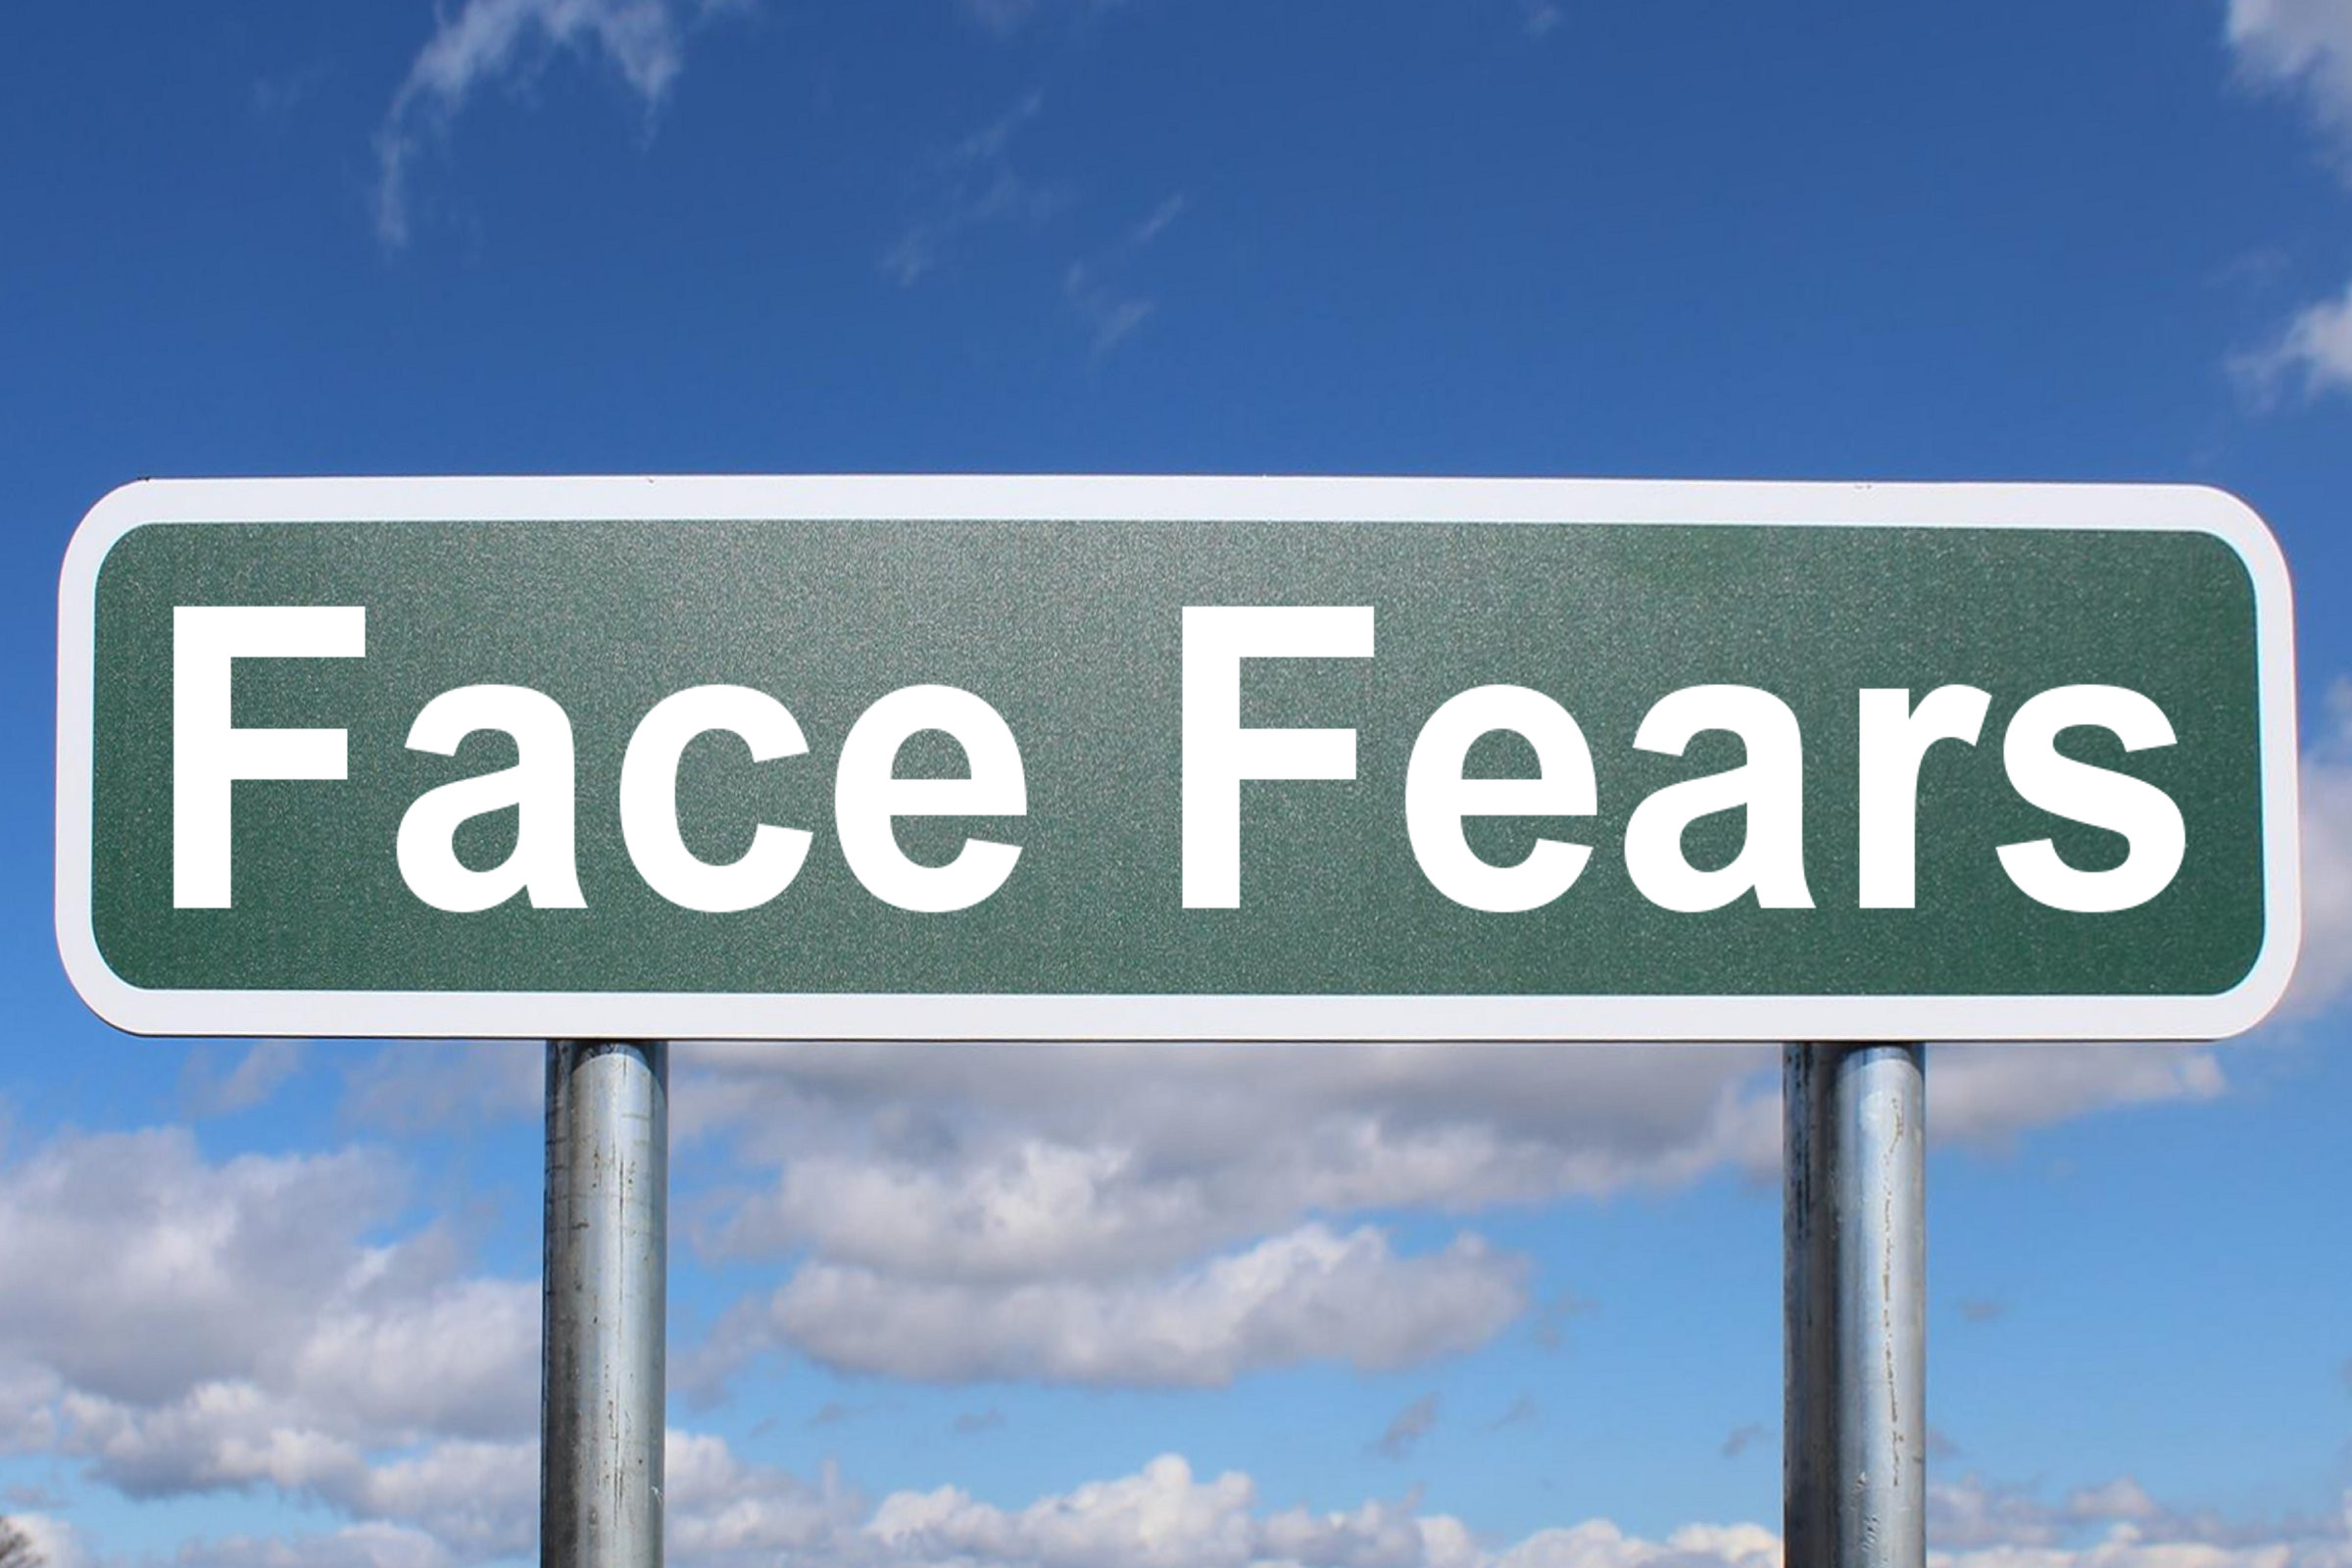 face fears